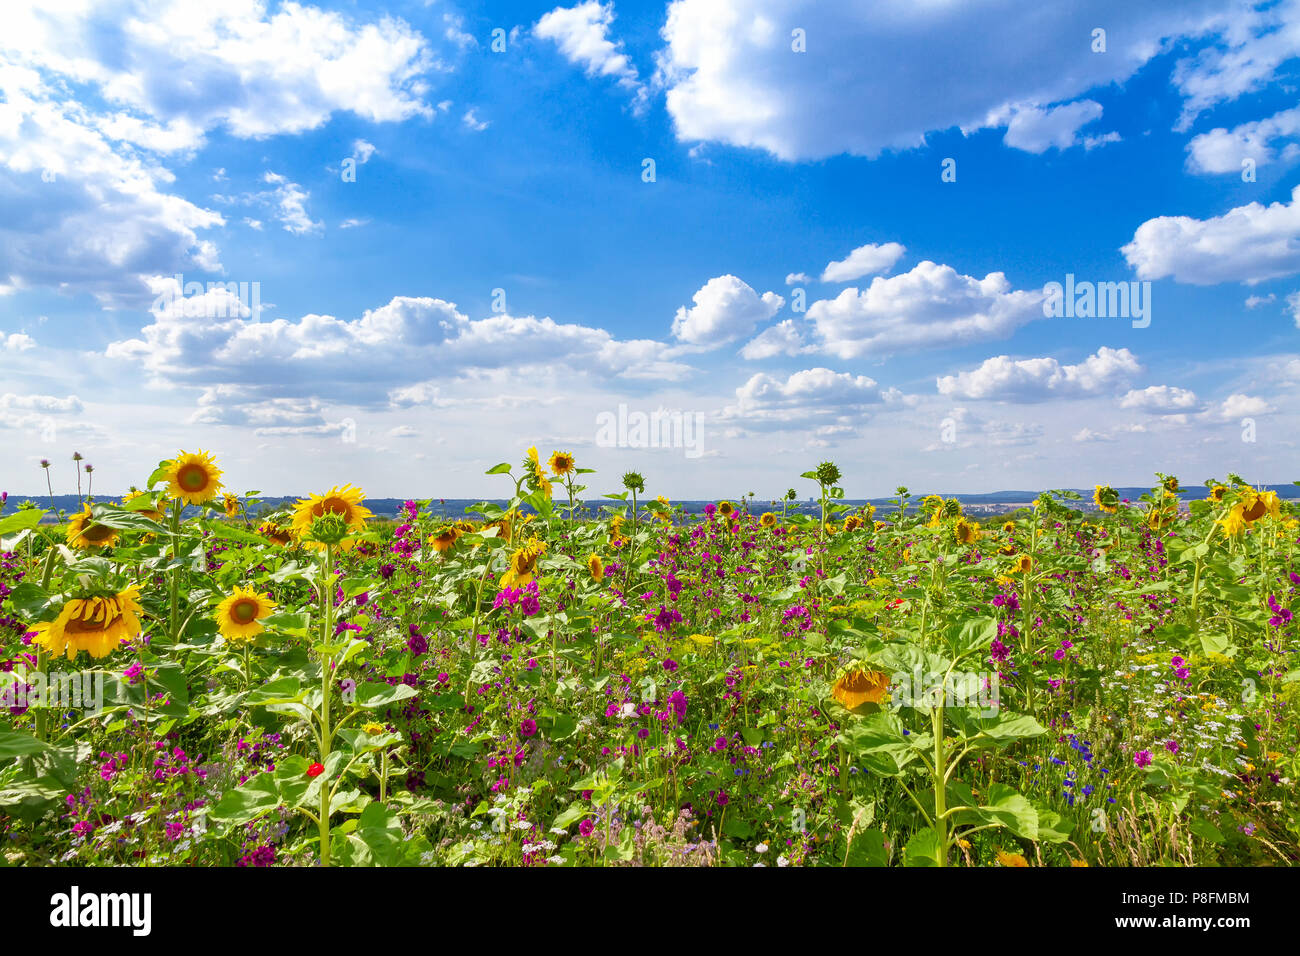 Flower field in summer Stock Photo